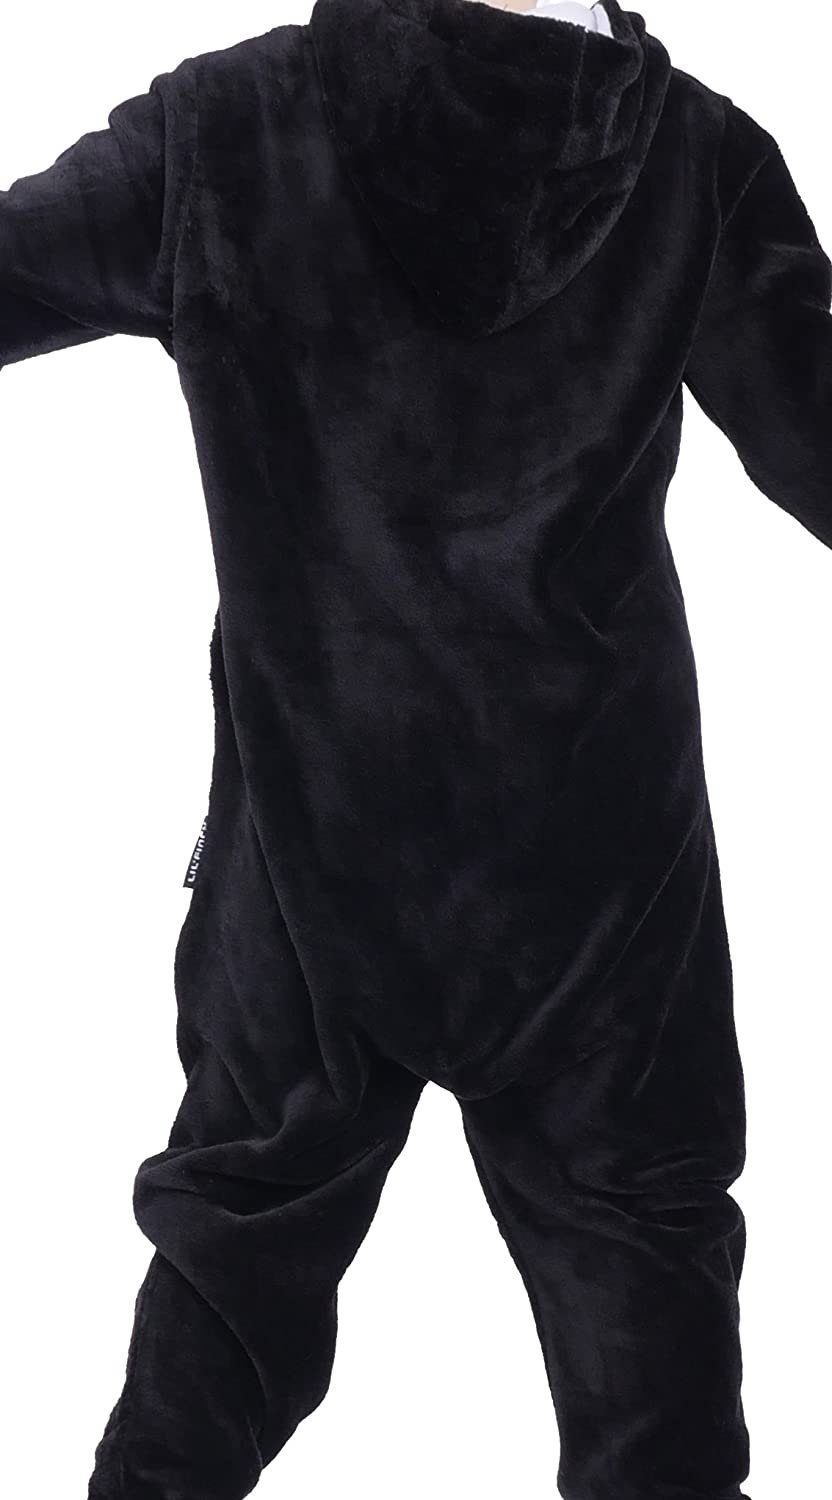 Jungen LIL'Teddy Schwarz/Weiß Kinder Mädchen Teddy Overall Fleece Jumpsuit F2004 LIL'FINCH